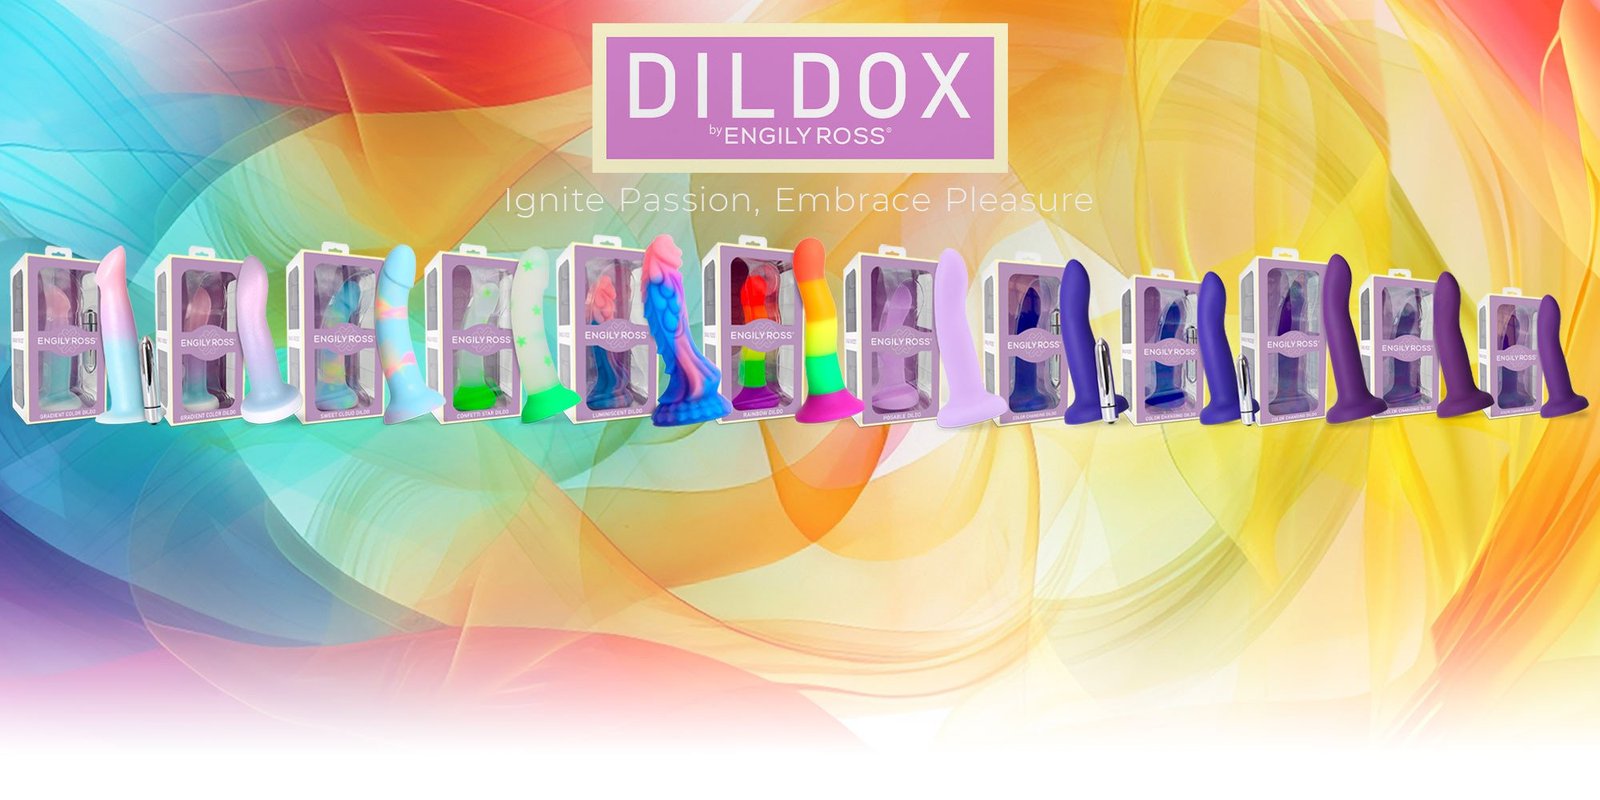 dildox engily ross banner